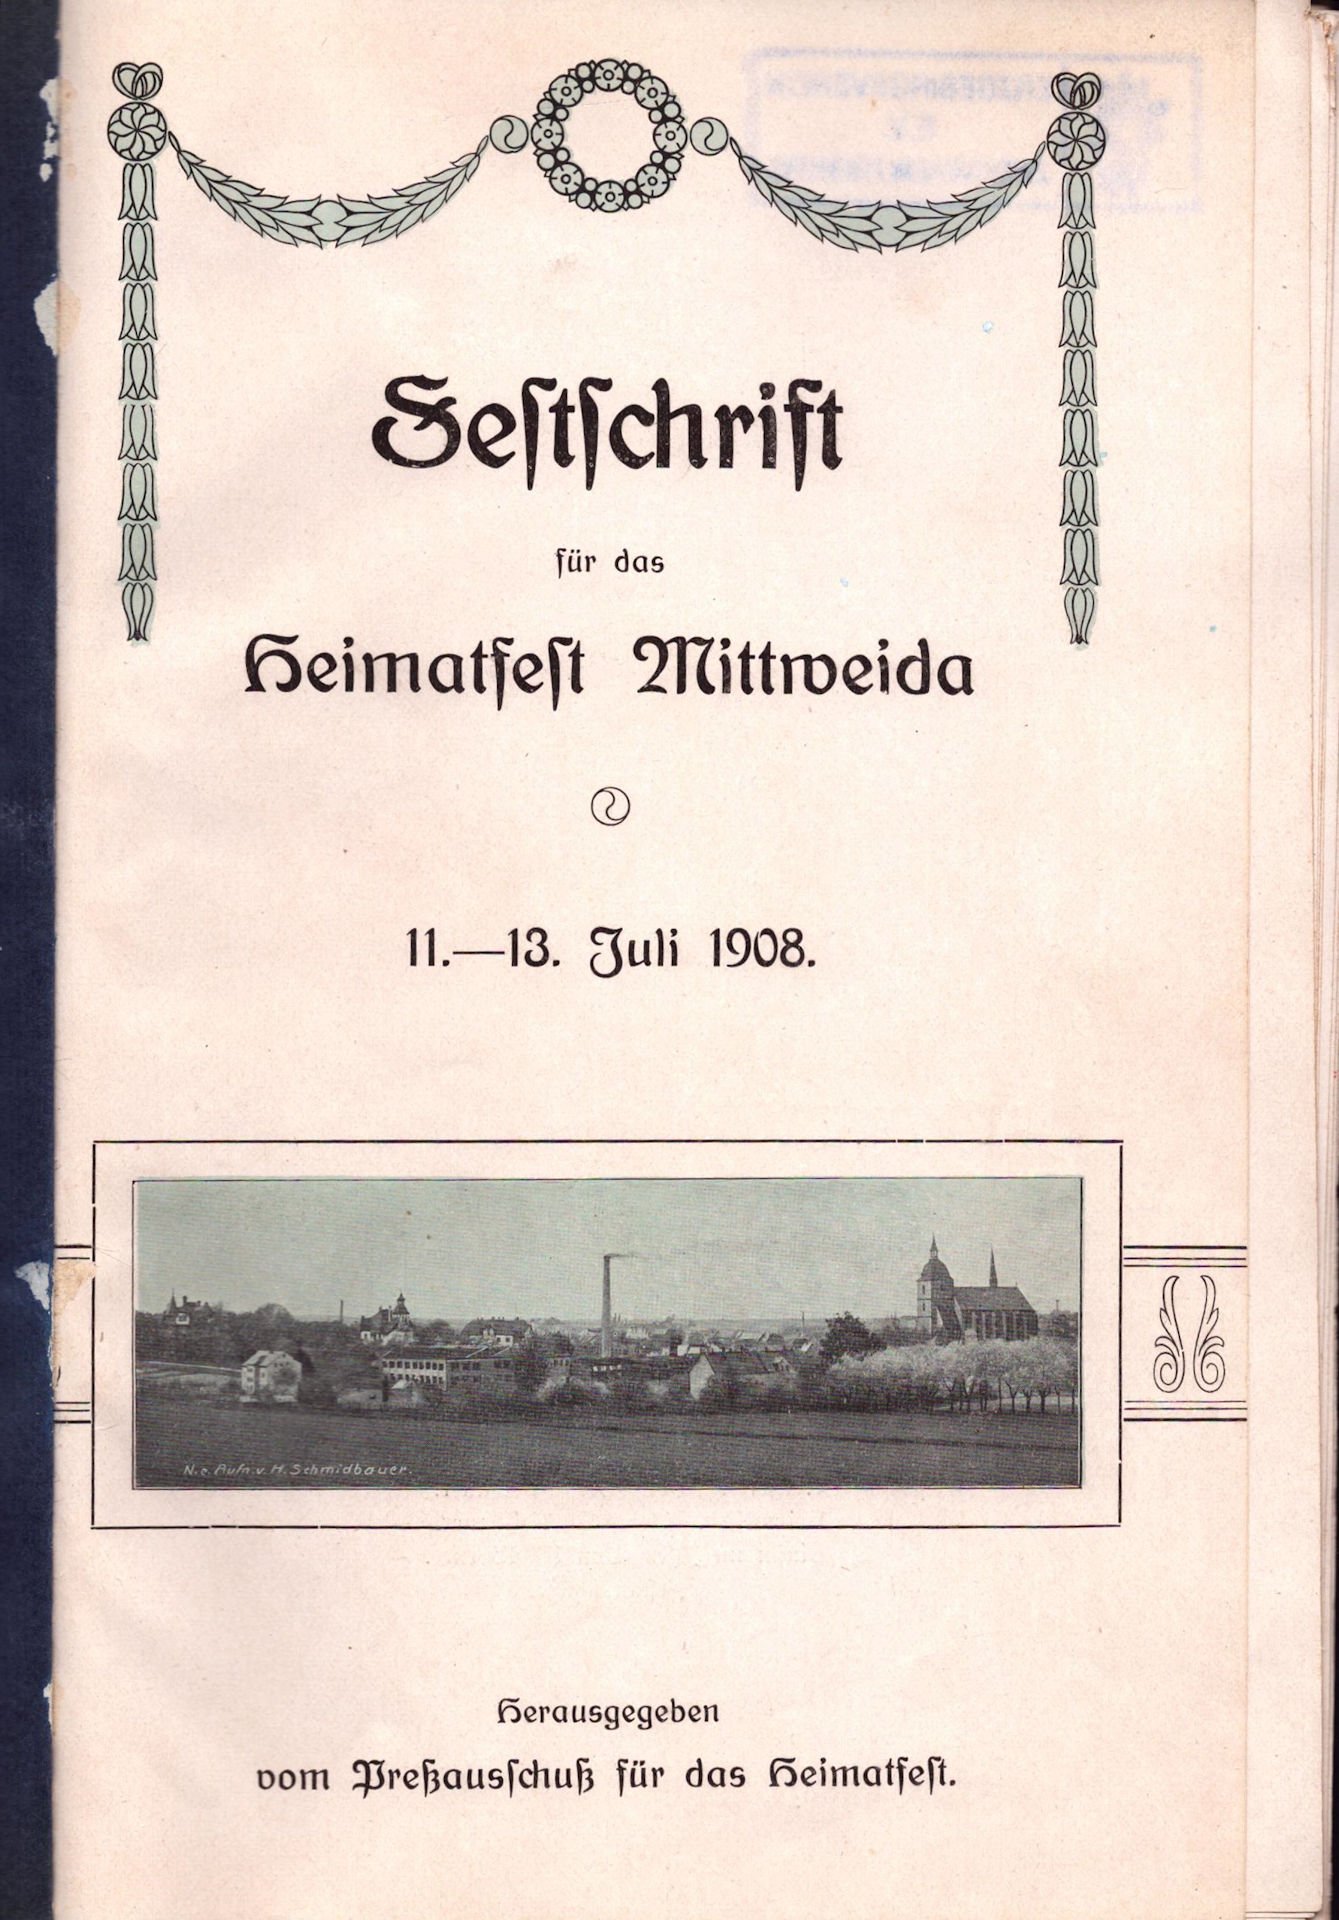 Festschrift für das Heimatfest Mittweida 11. - 13. Juli 1908 (Saxonia-Freiberg-Stiftung CC BY-NC-SA)